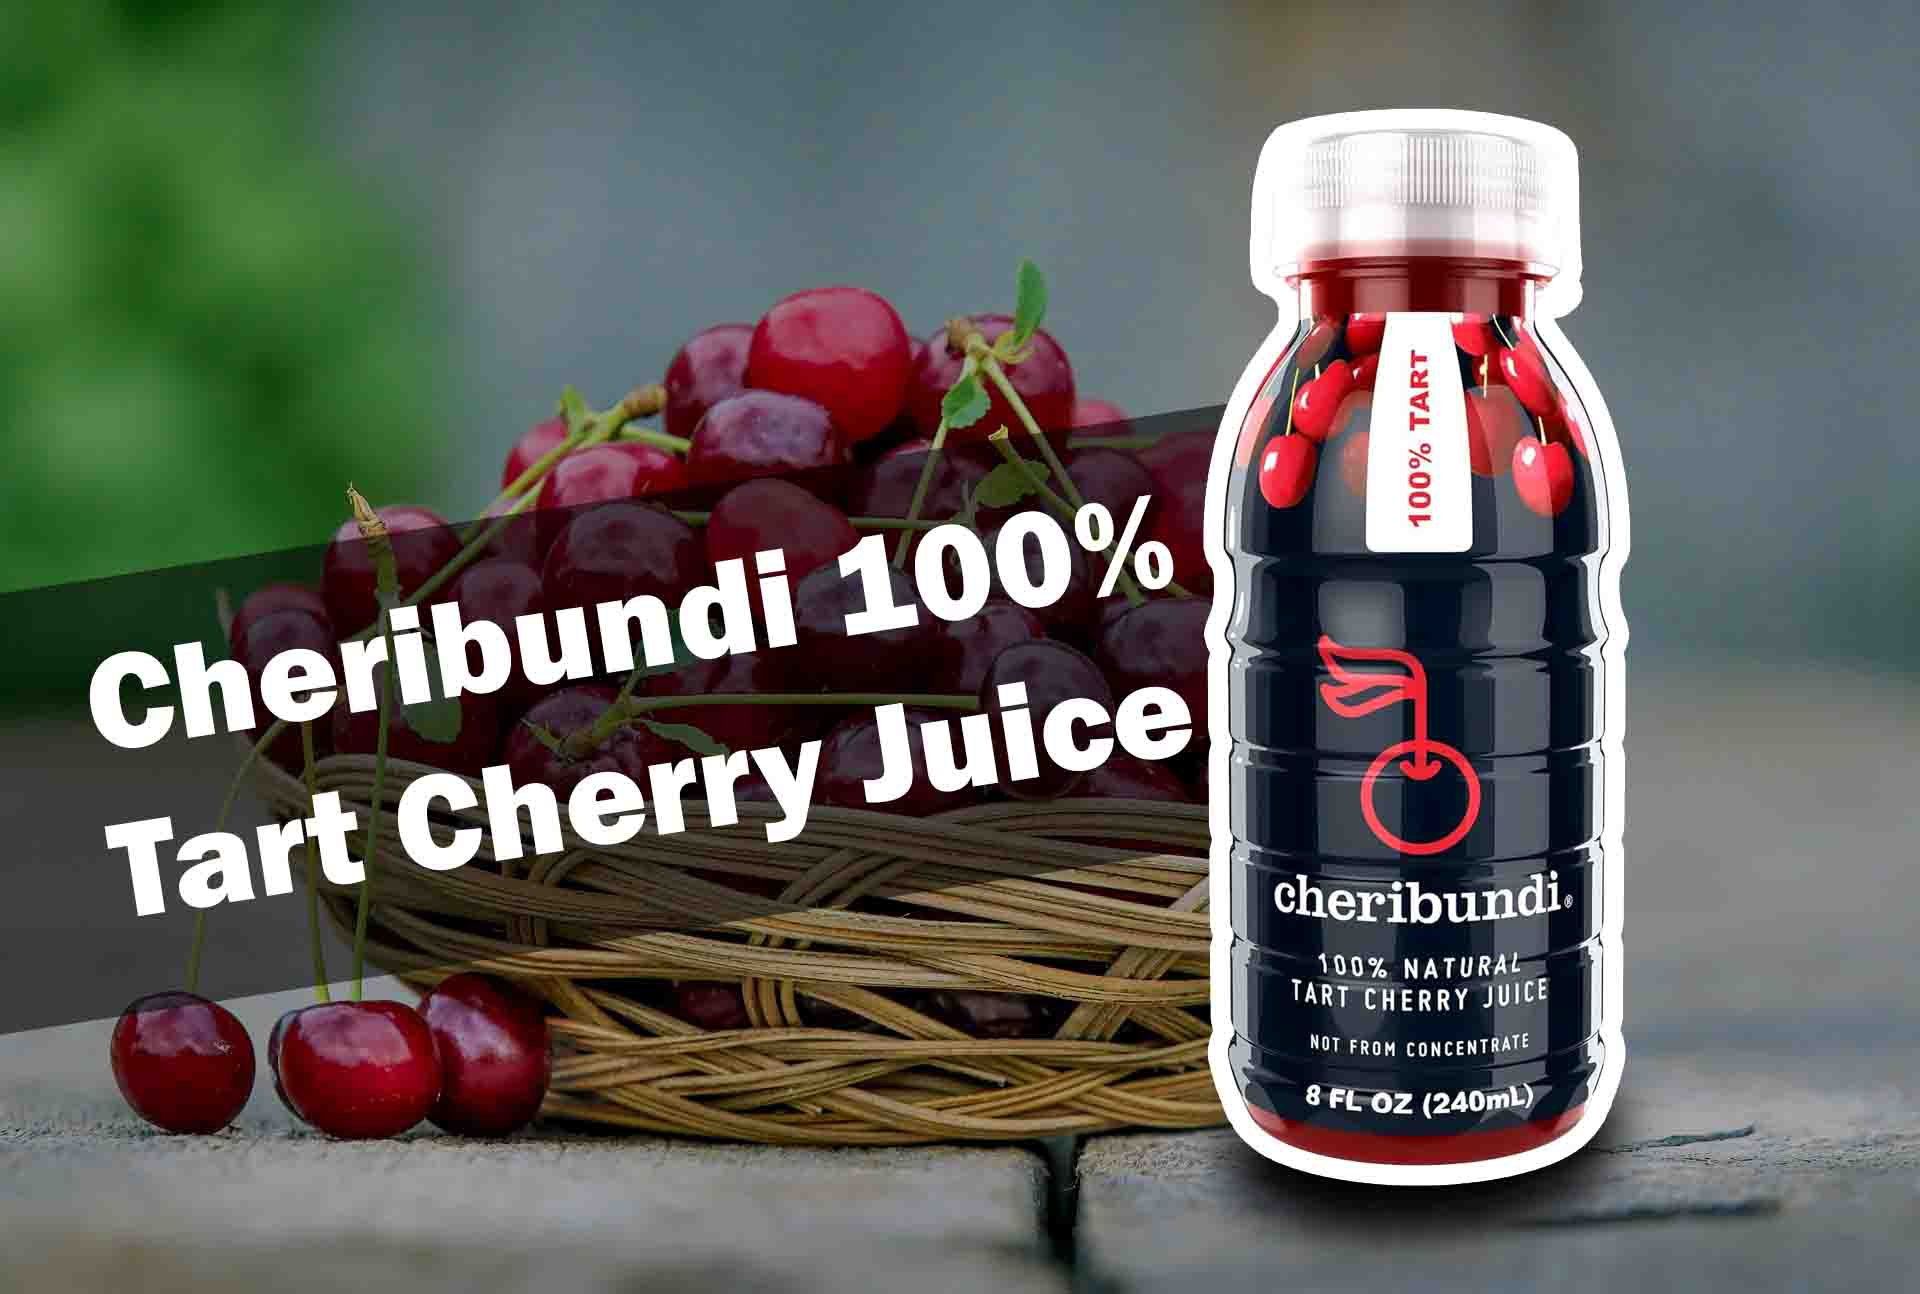 Cheribundi 100% Tart Cherry Juice